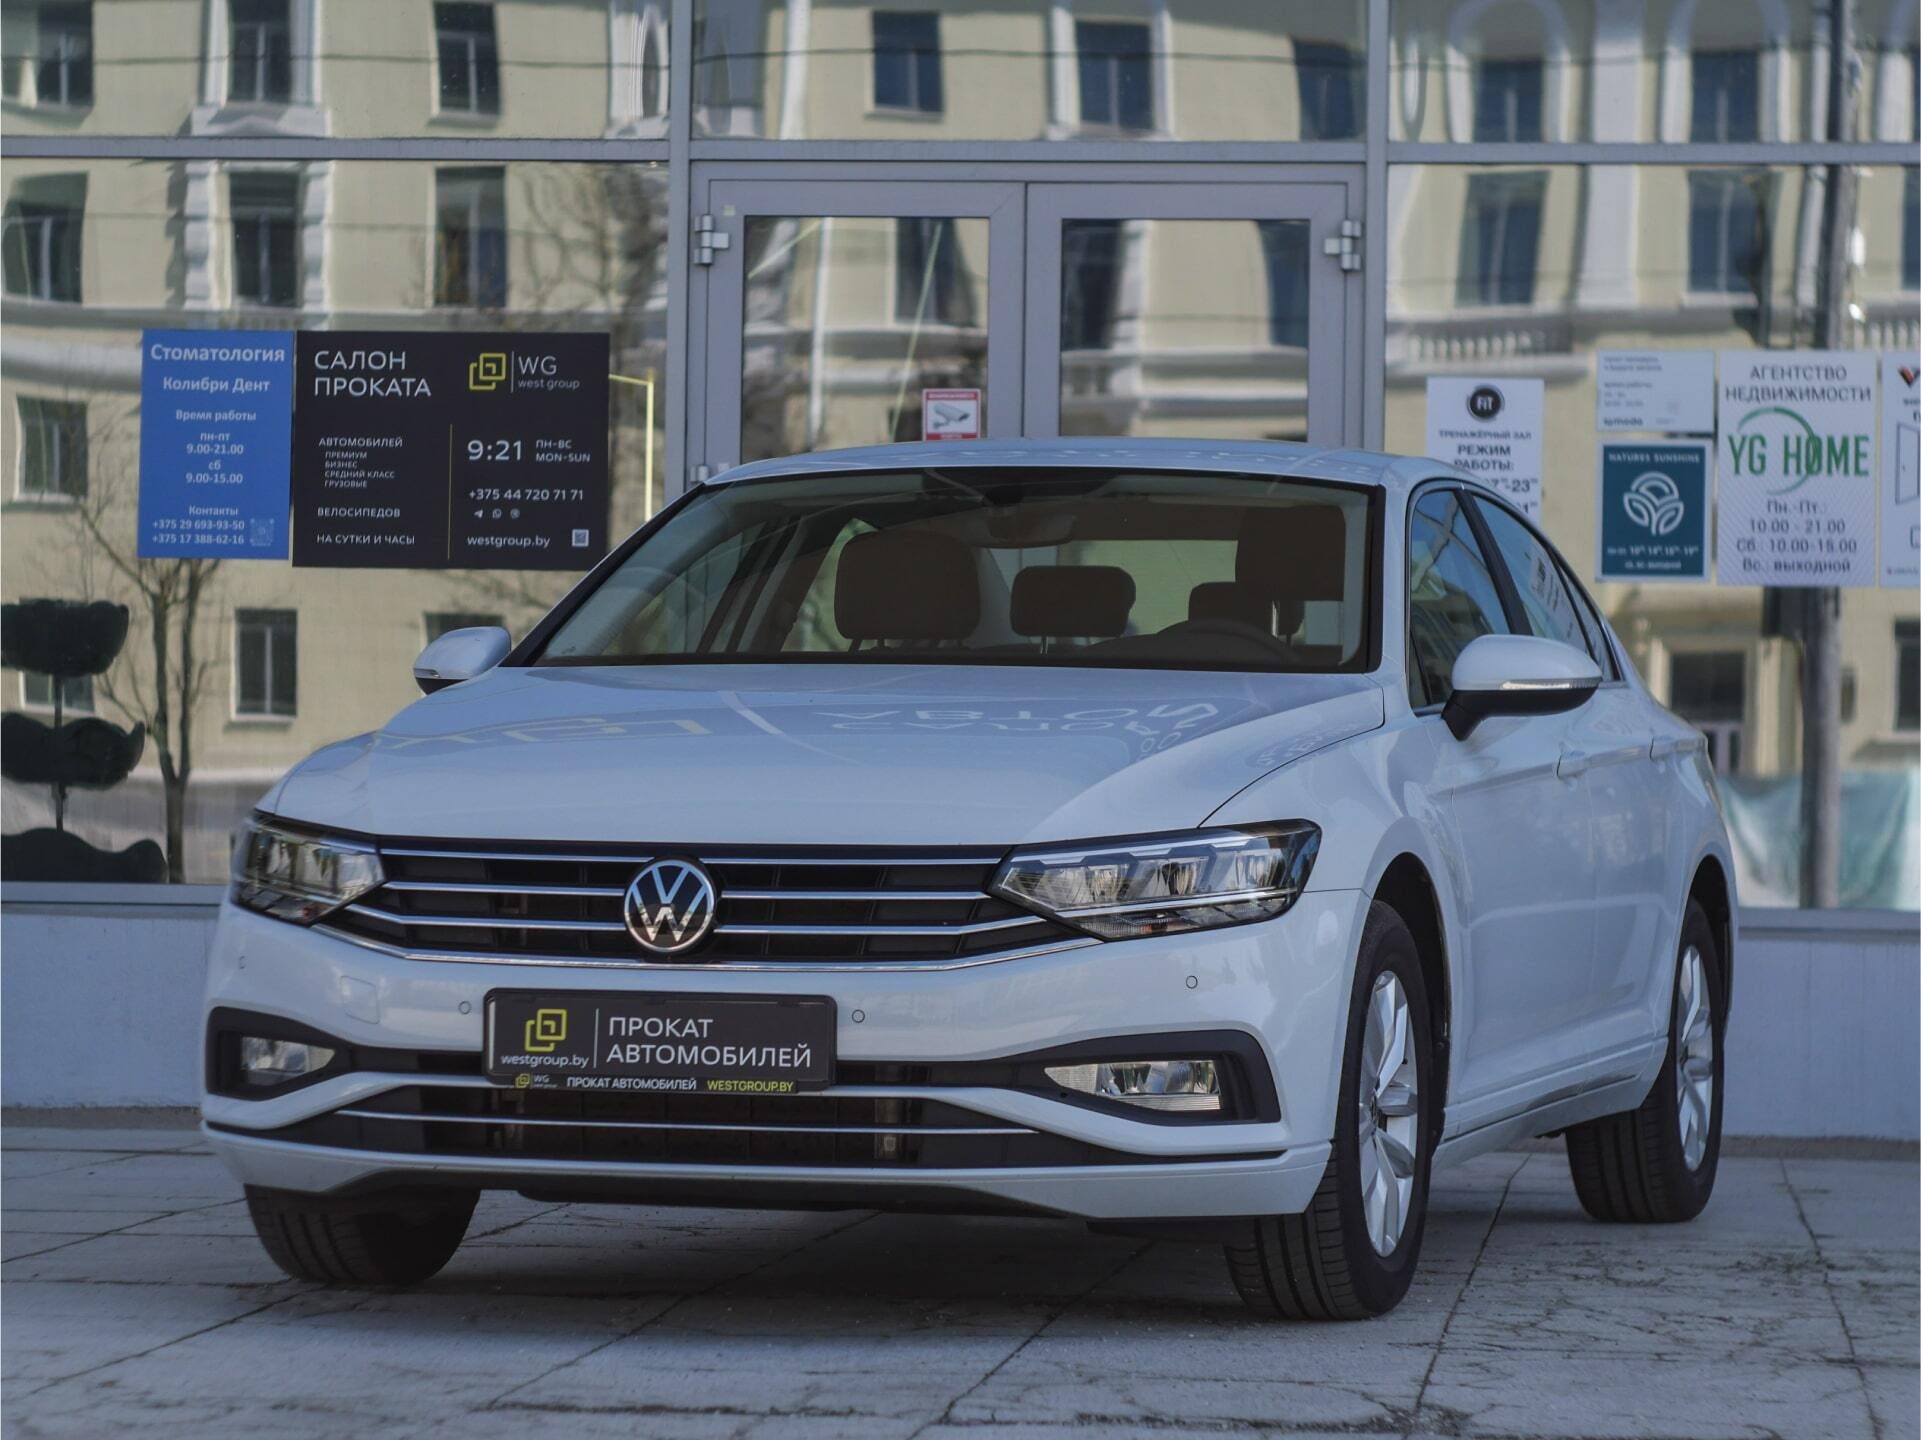 Специальное предложение на ареду Volkswagen Passat